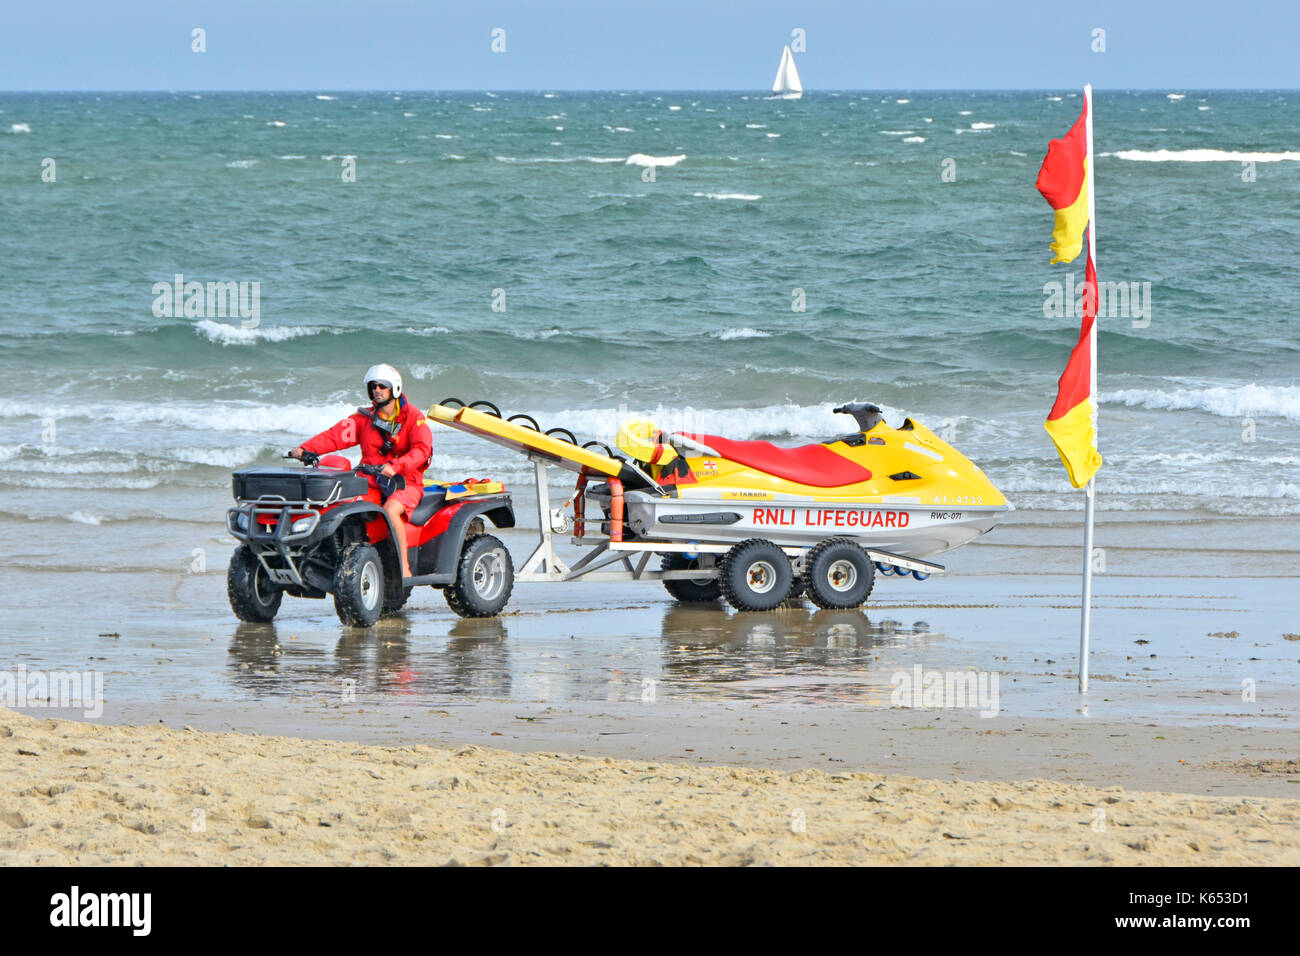 RNLI bagnino sul litorale a banchi di sabbia spiaggia alla guida di un ATV quad bike e Yamaha jet ski PWC mezzo di salvataggio con mare mosso e barca a vela distante Foto Stock